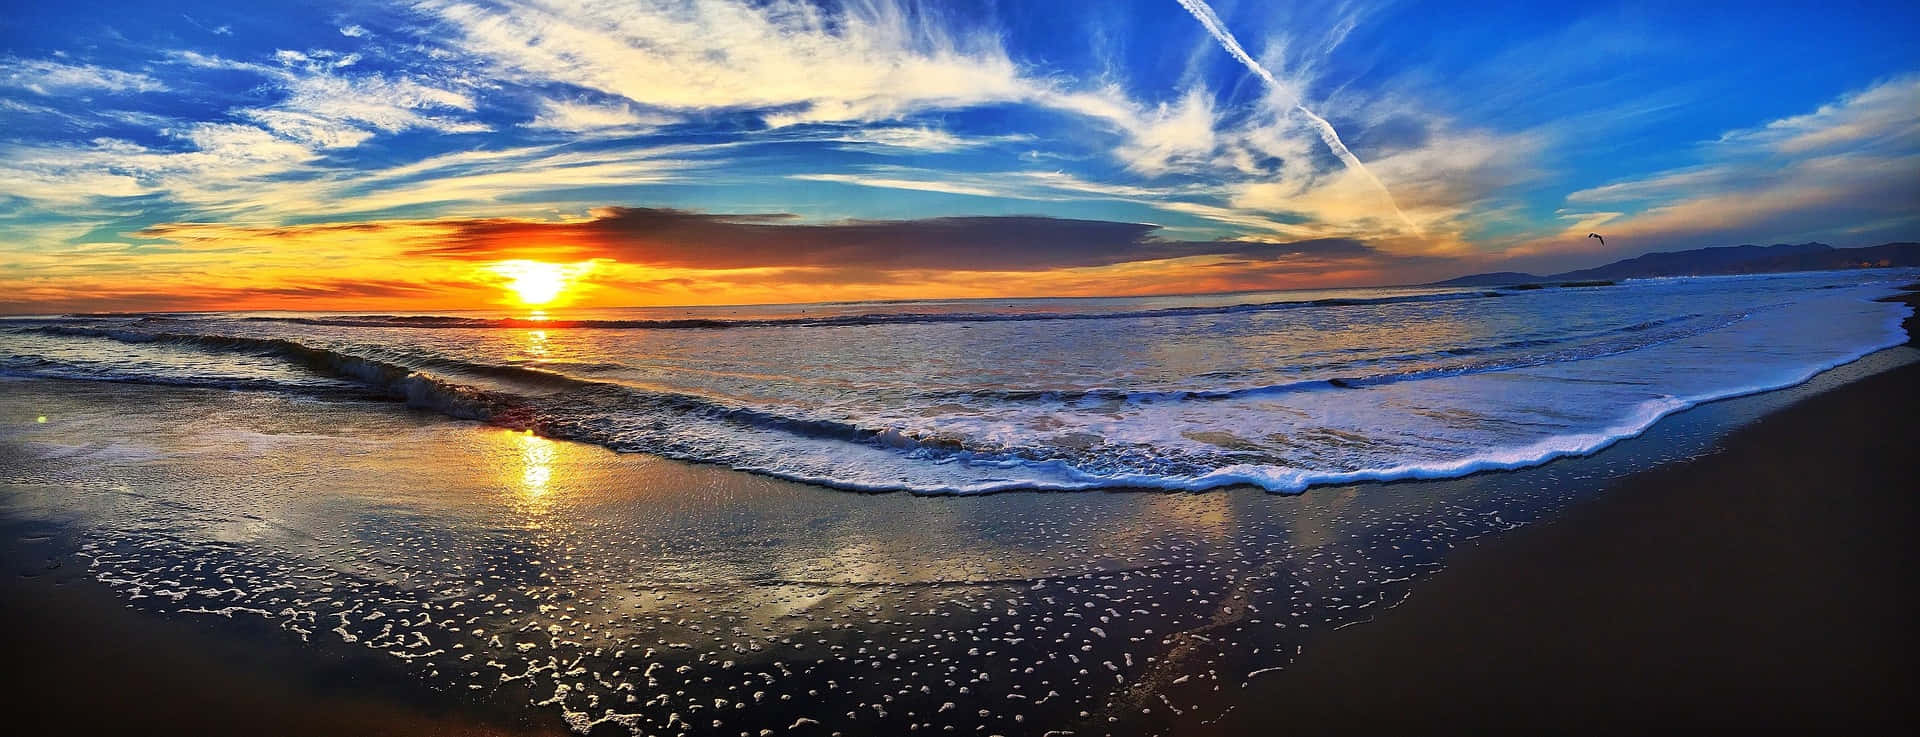 Fotos Do Sunset Ocean